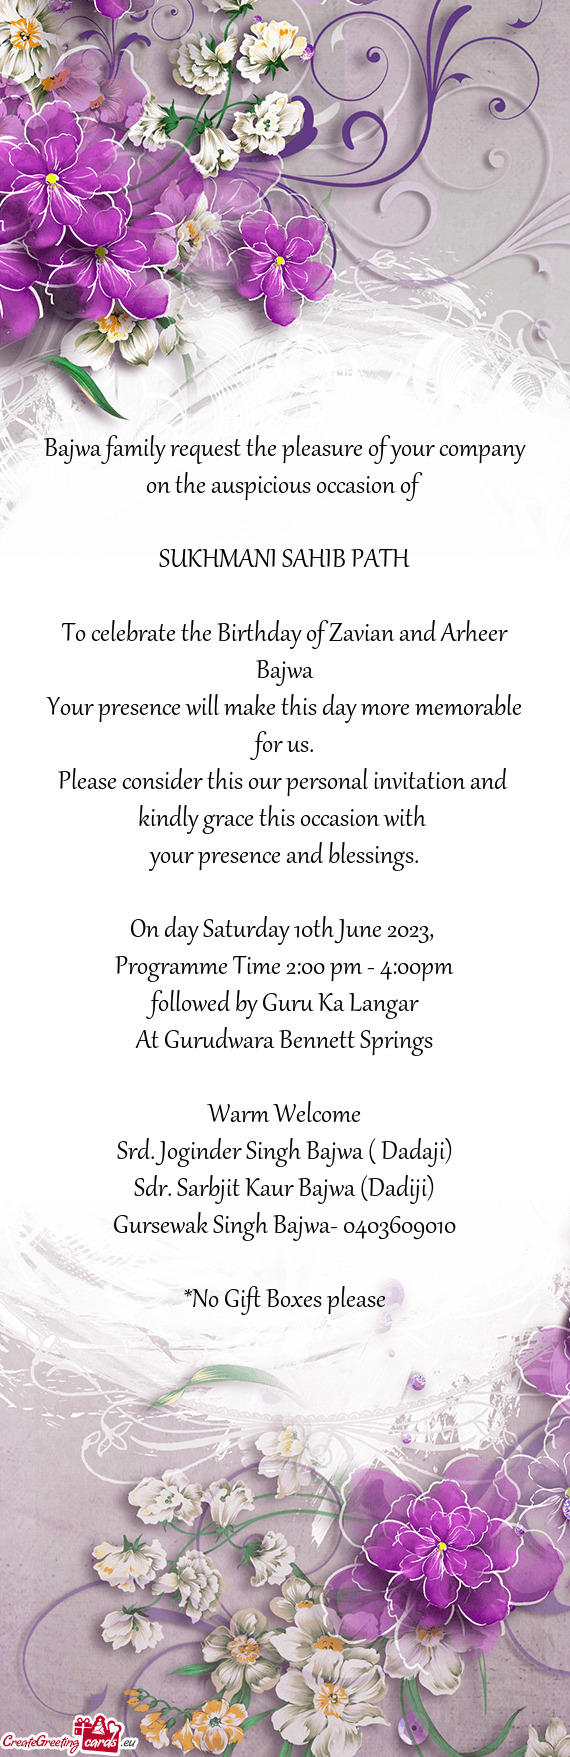 To celebrate the Birthday of Zavian and Arheer Bajwa